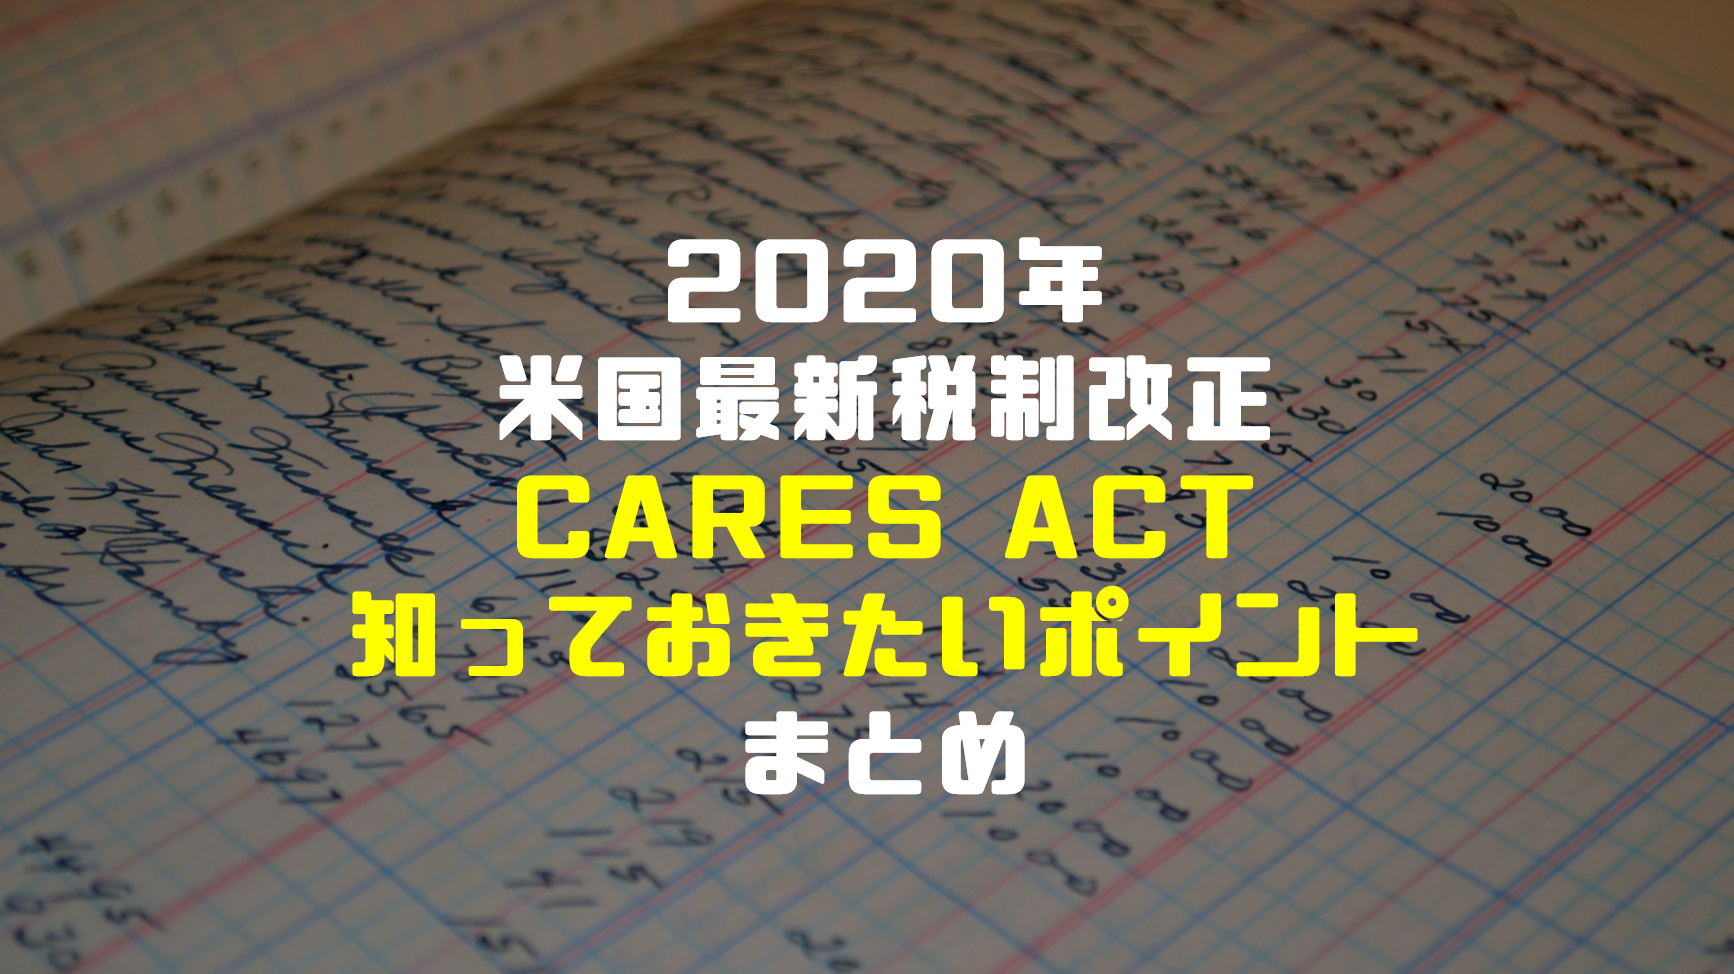 年米国税制改正 Cares Actとは 日本の決算上知っておくべきポイントまとめ ケッサンノート